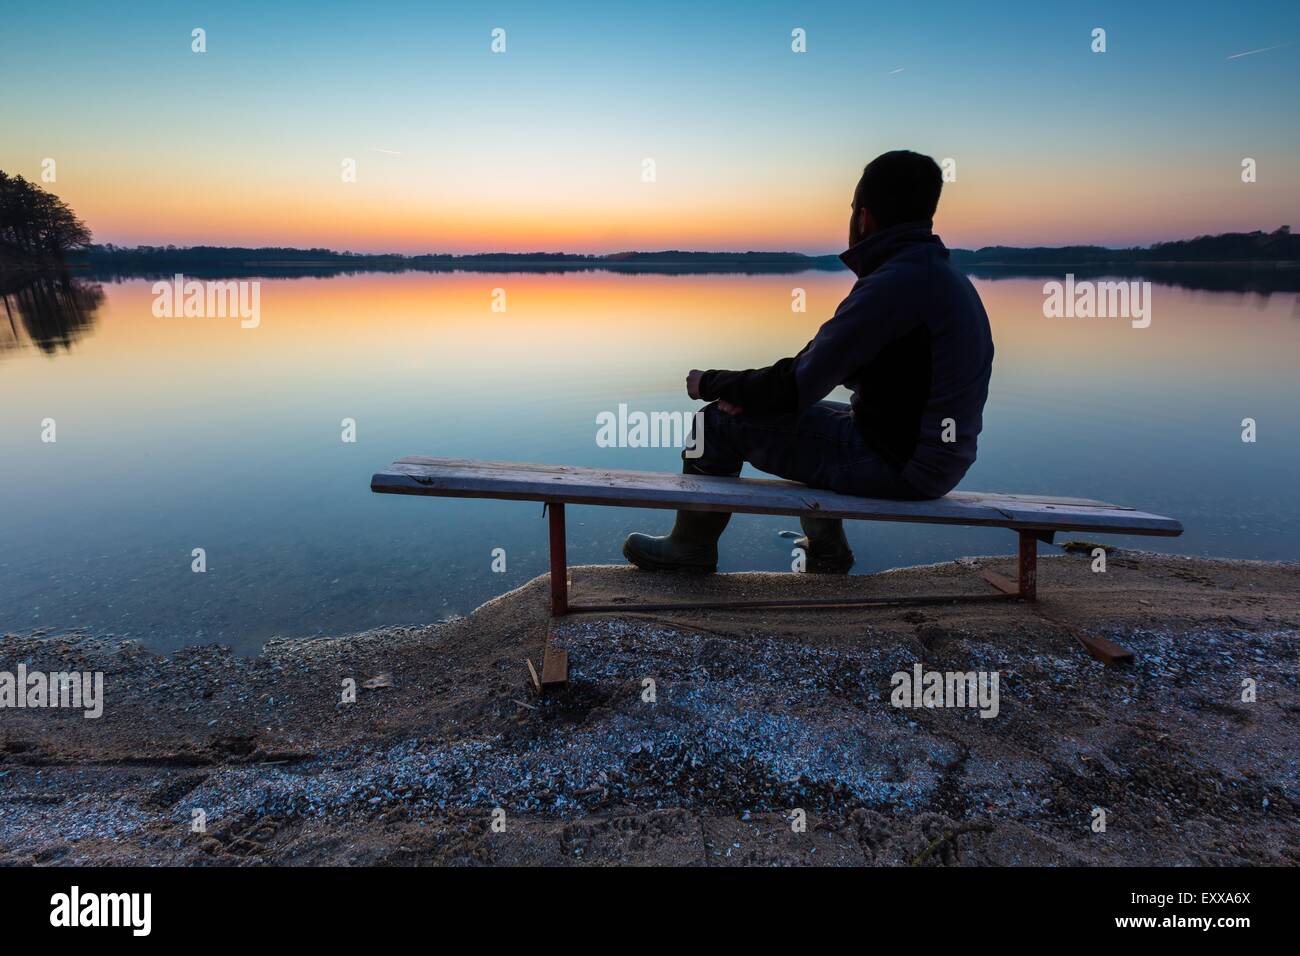 L'homme dans l'eau du lac au coucher du soleil. Magnifique coucher de soleil avec l'homme d'ossature Banque D'Images